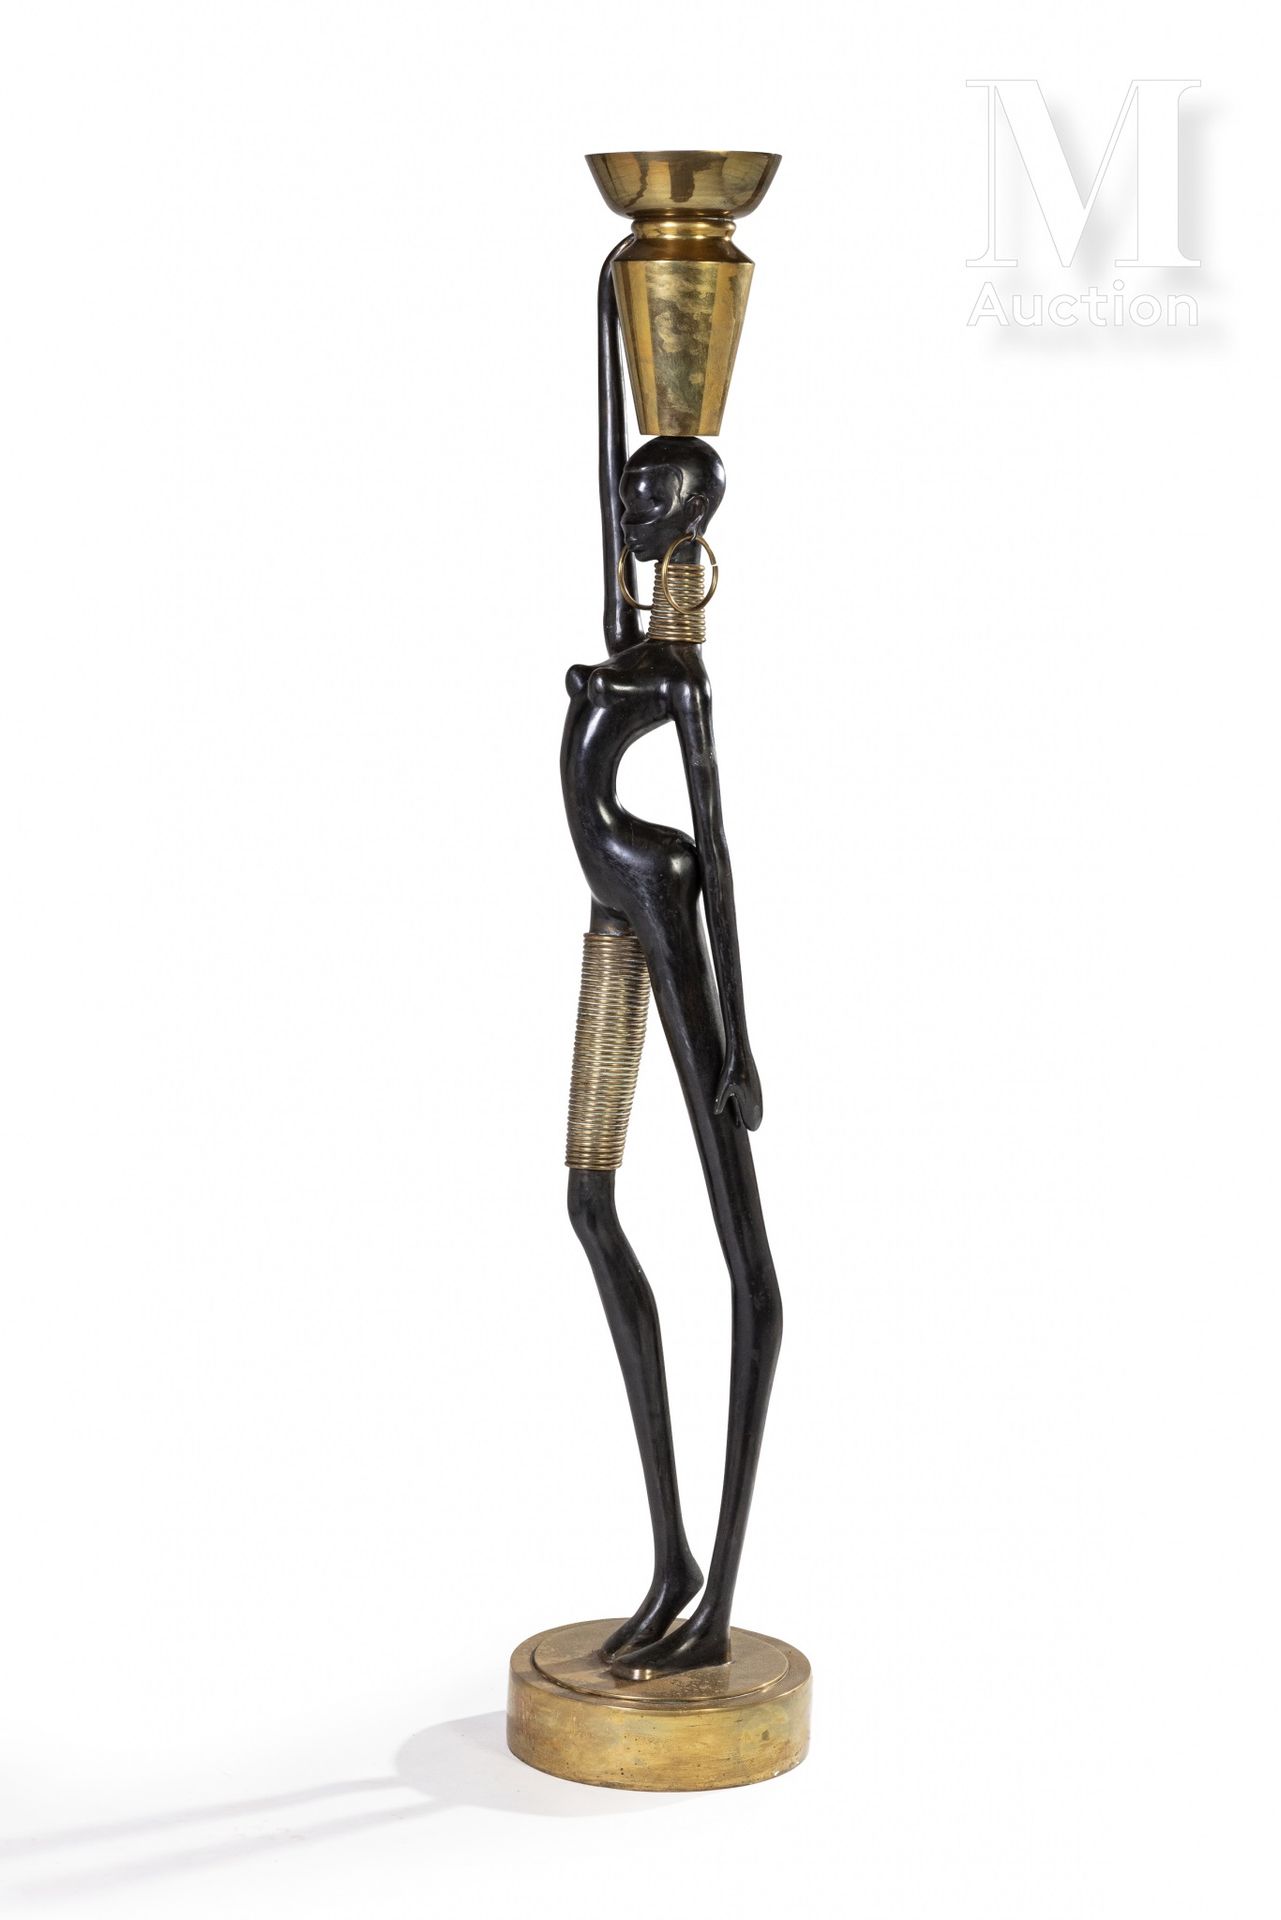 Dans le style de Karl HAGENAUER Giraffenfrau

Skulptur aus dunkel patiniertem un&hellip;